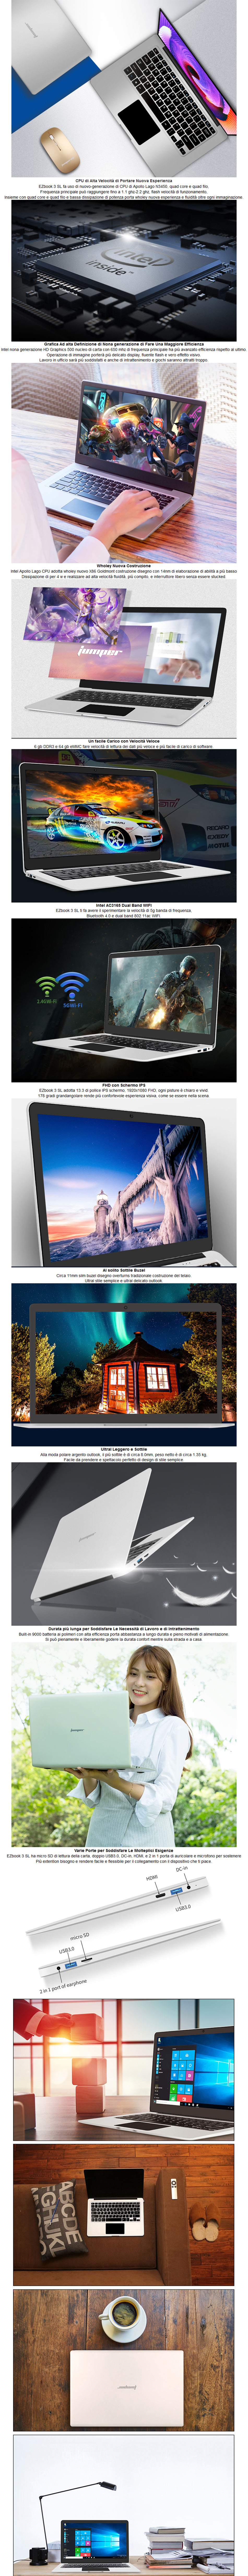 Jumper EZbook 3SL Laptop 13.3 inch Windows 10 Intel Apollo Lake N3450 6GB DDR3 64GB EMMC 